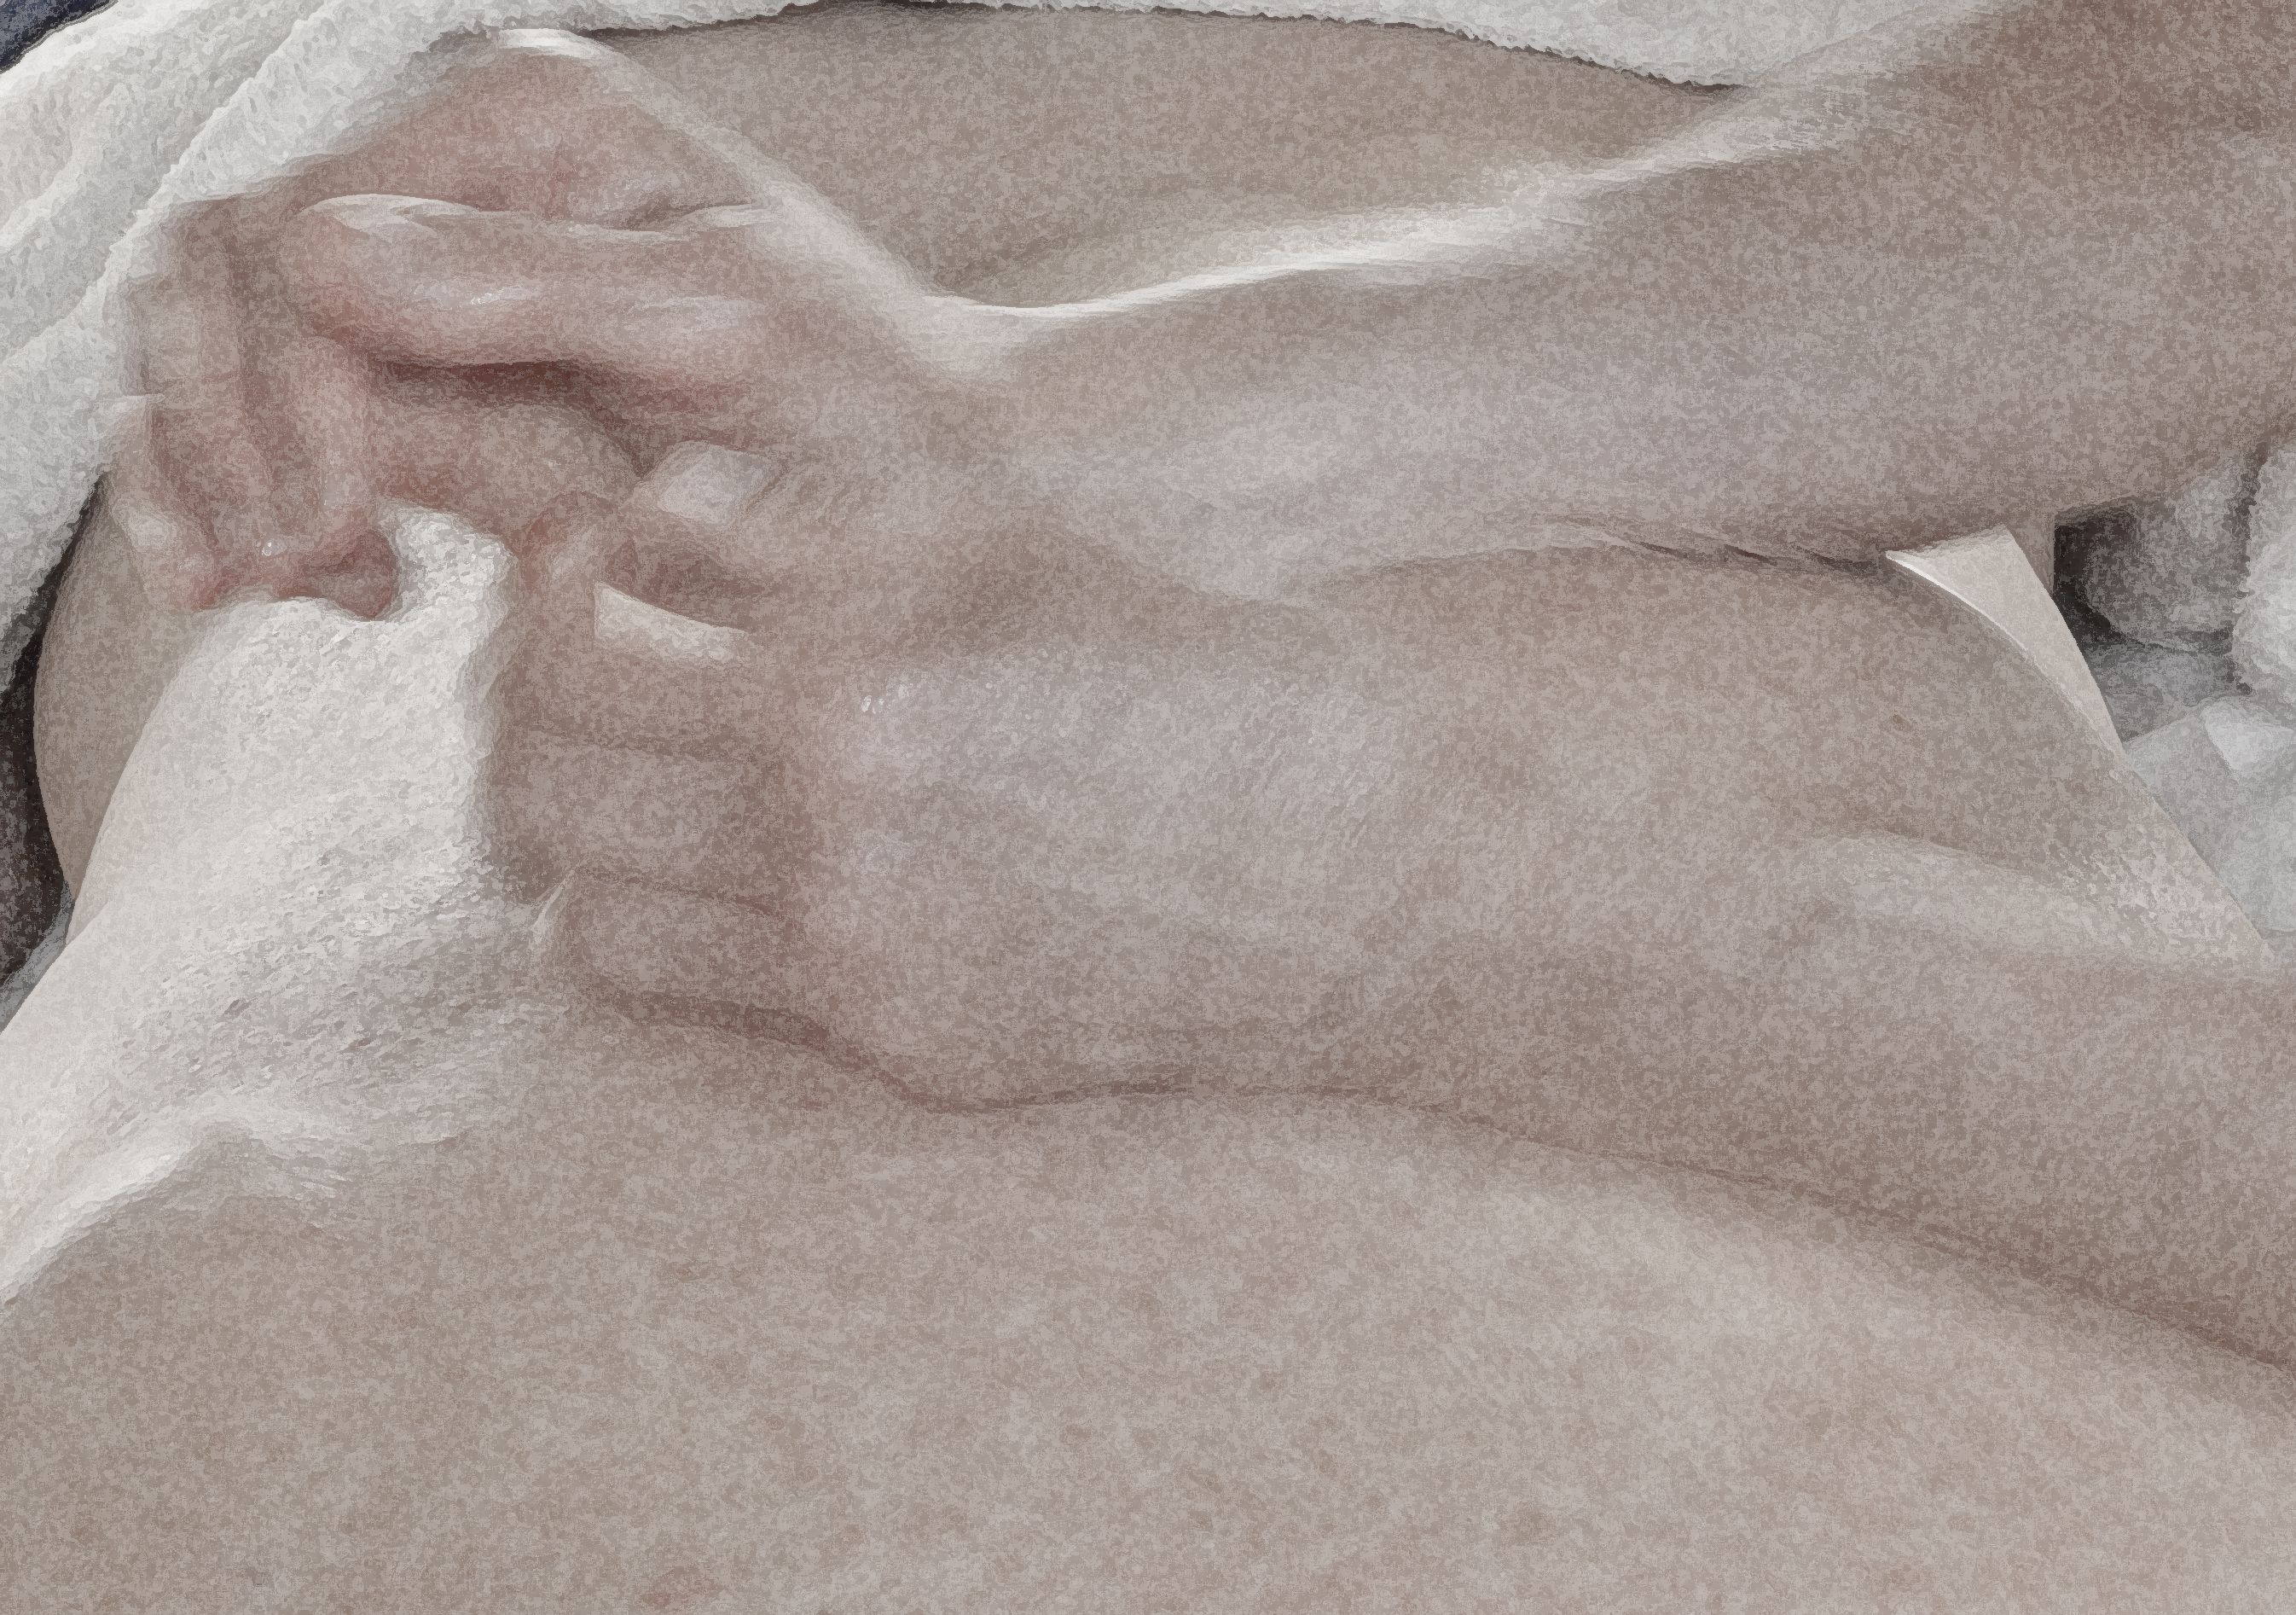 Bodywork massage